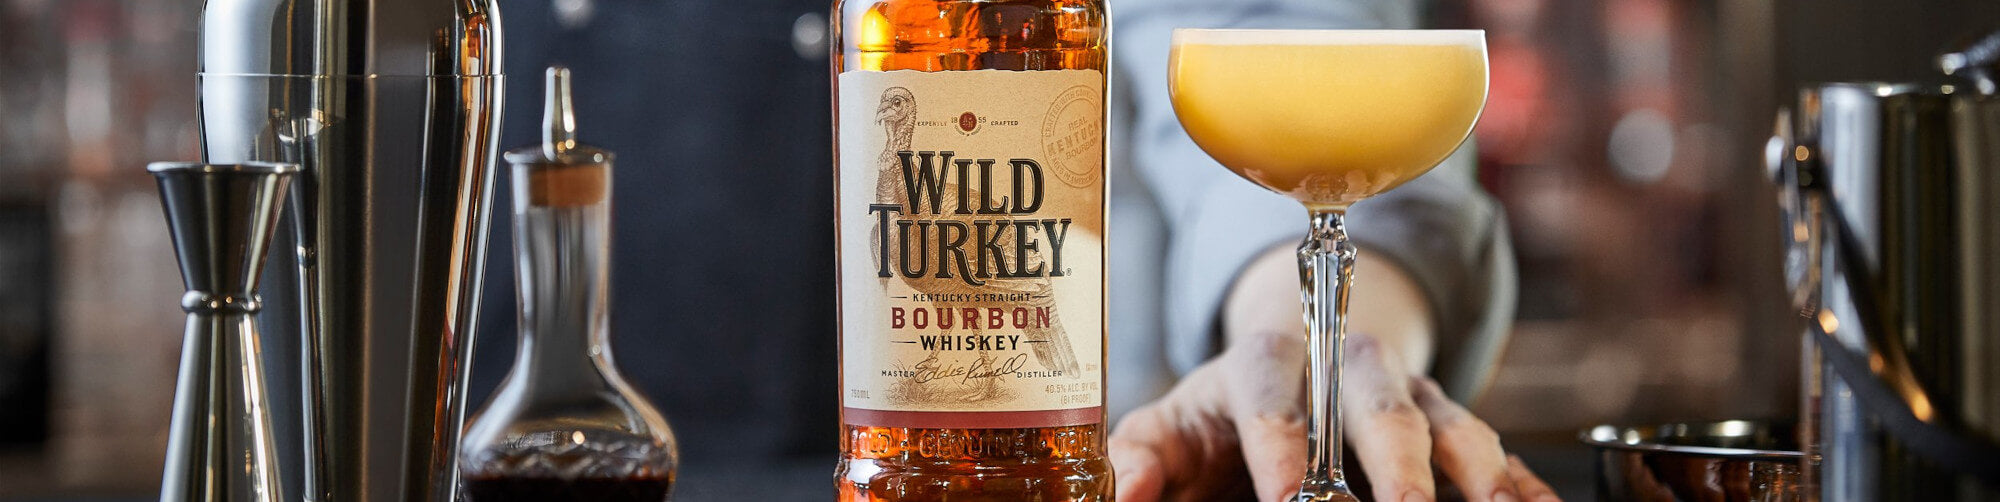 Buy Wild Turkey Whiskey Online